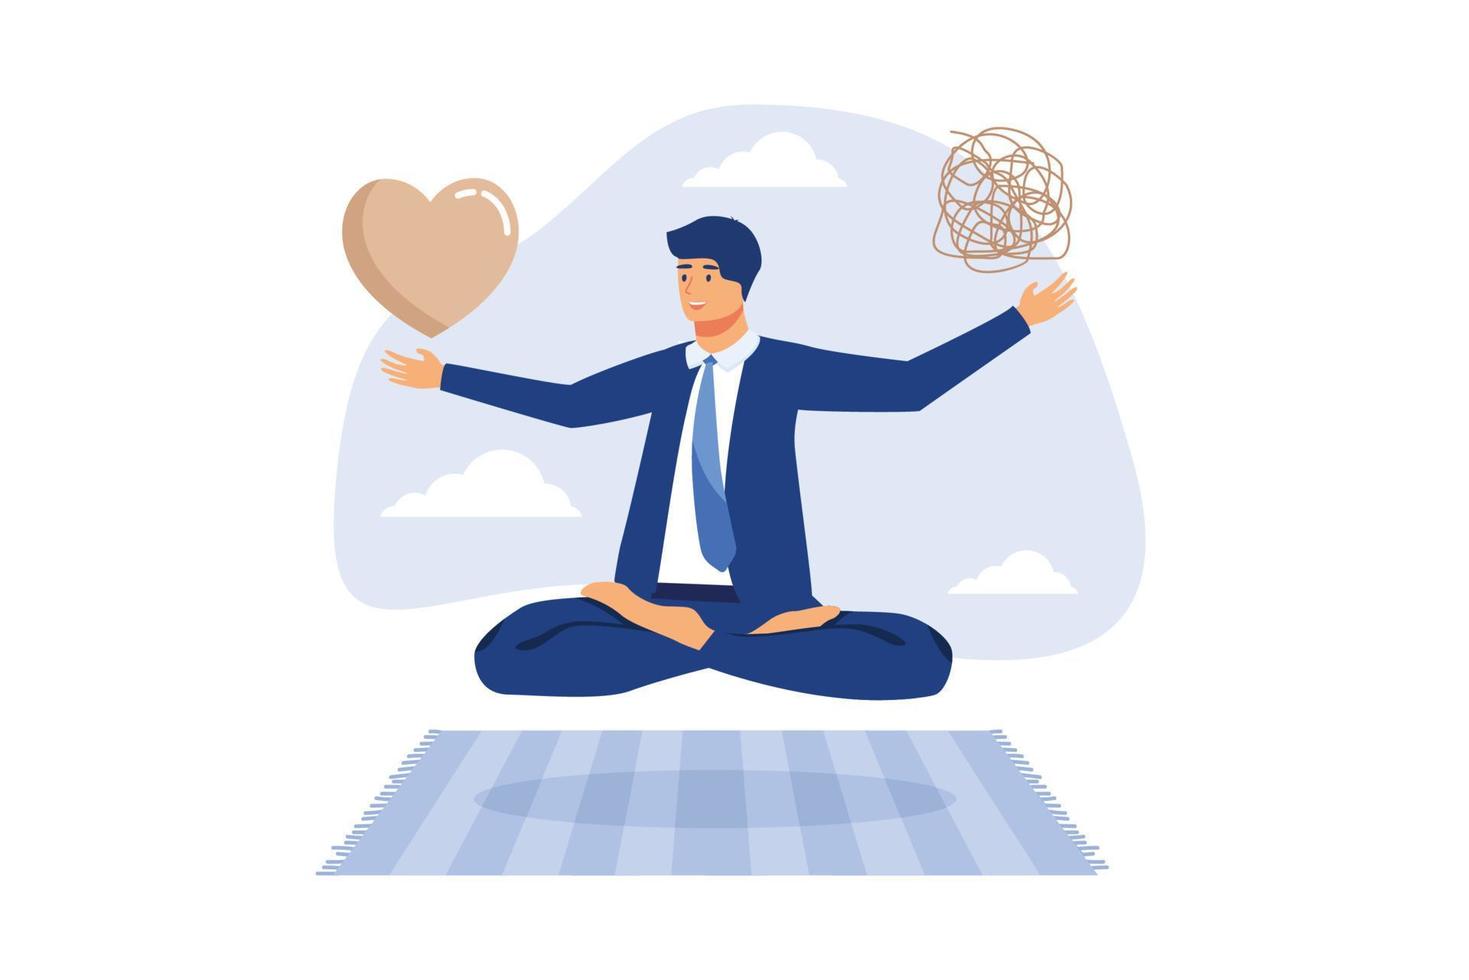 equilíbrio de gerenciamento de estresse entre concentração de trabalho e saúde mental, equilíbrio de vida profissional ou meditação e relaxamento, empresário medita flutuando equilibrando caos bagunçado e forma de coração de paixão pelo trabalho. vetor